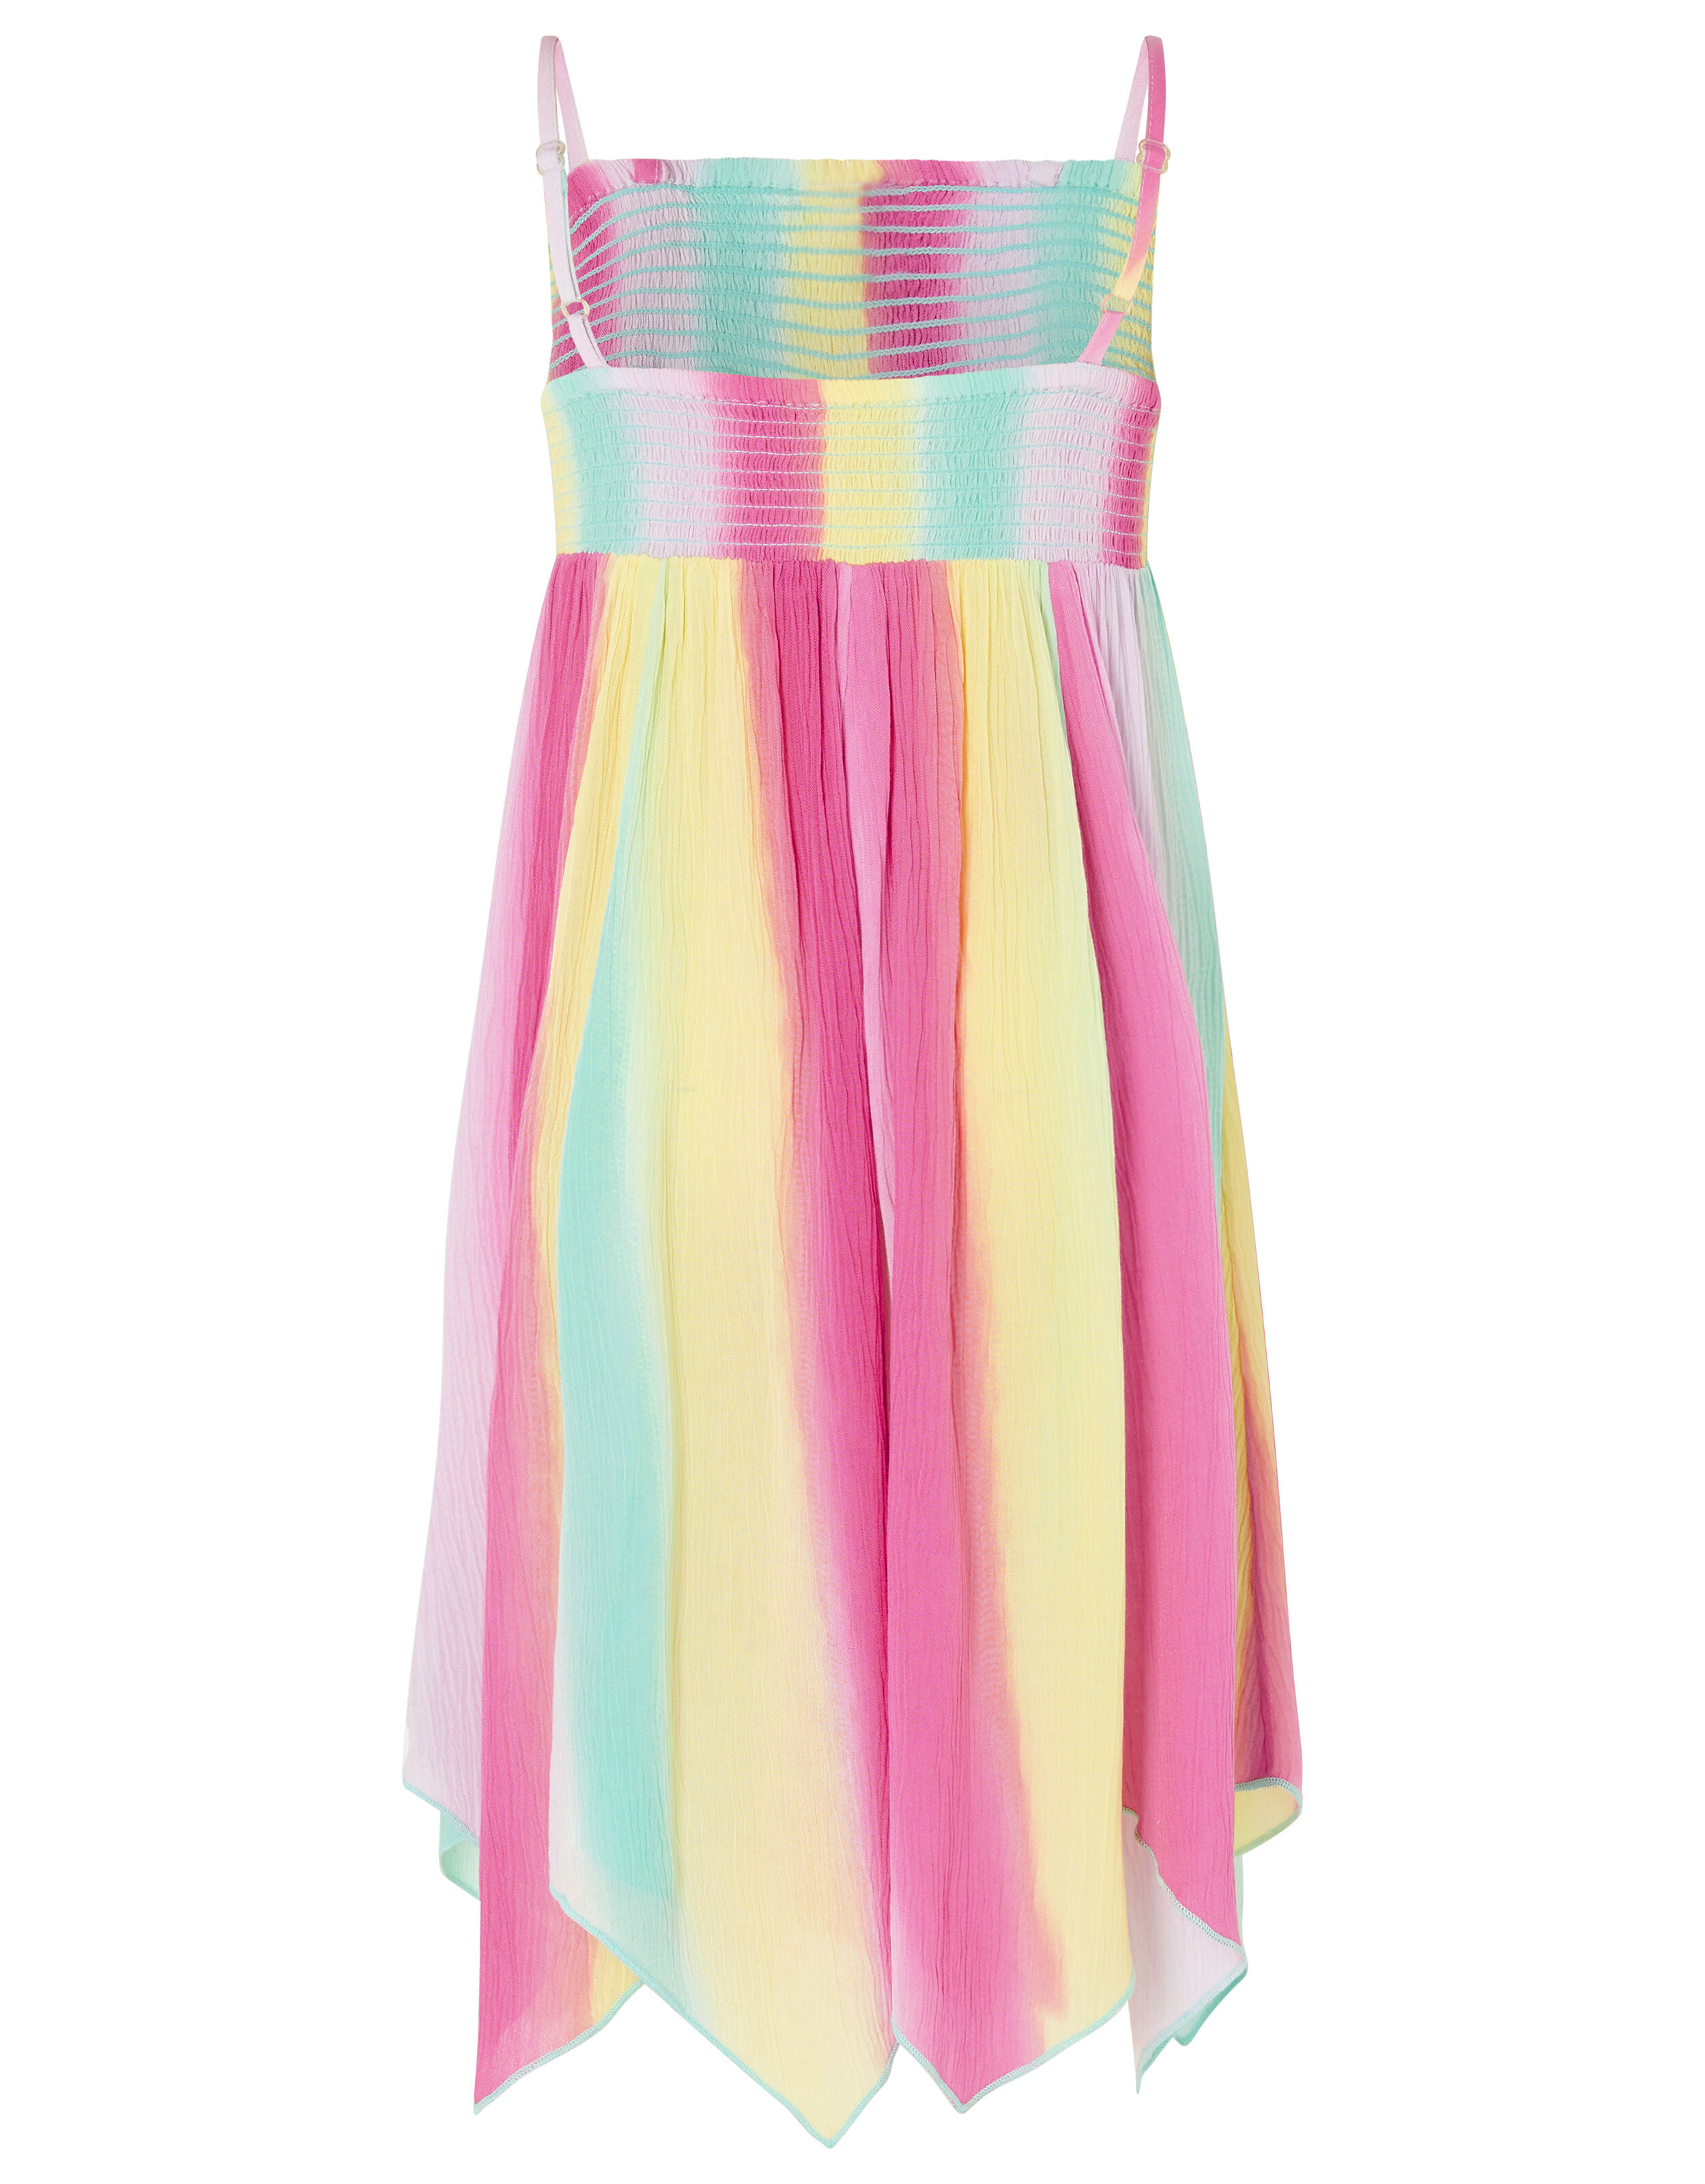 Rainbow Tie-Dye Dress in LENZING ...